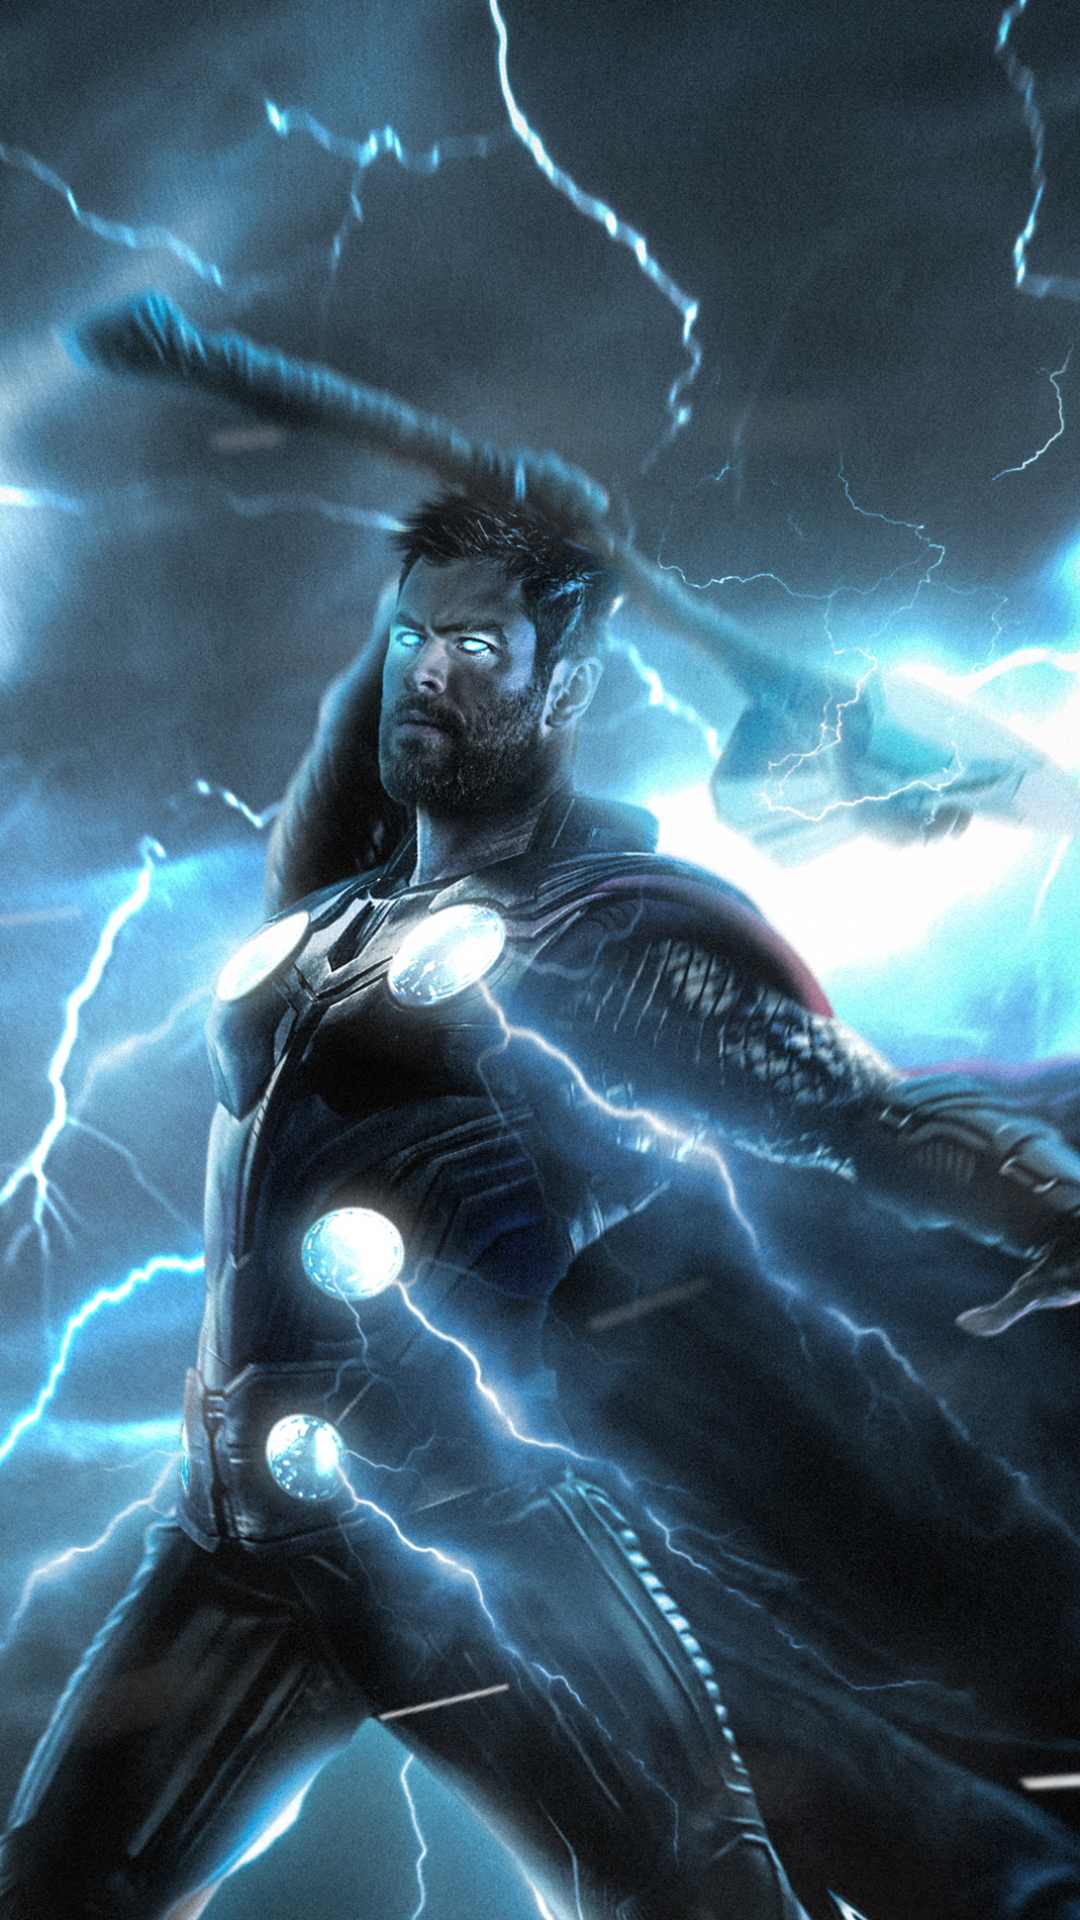 Descarga gratuita de fondo de pantalla para móvil de Los Vengadores, Películas, Thor, Vengadores: Guerra Infinita.